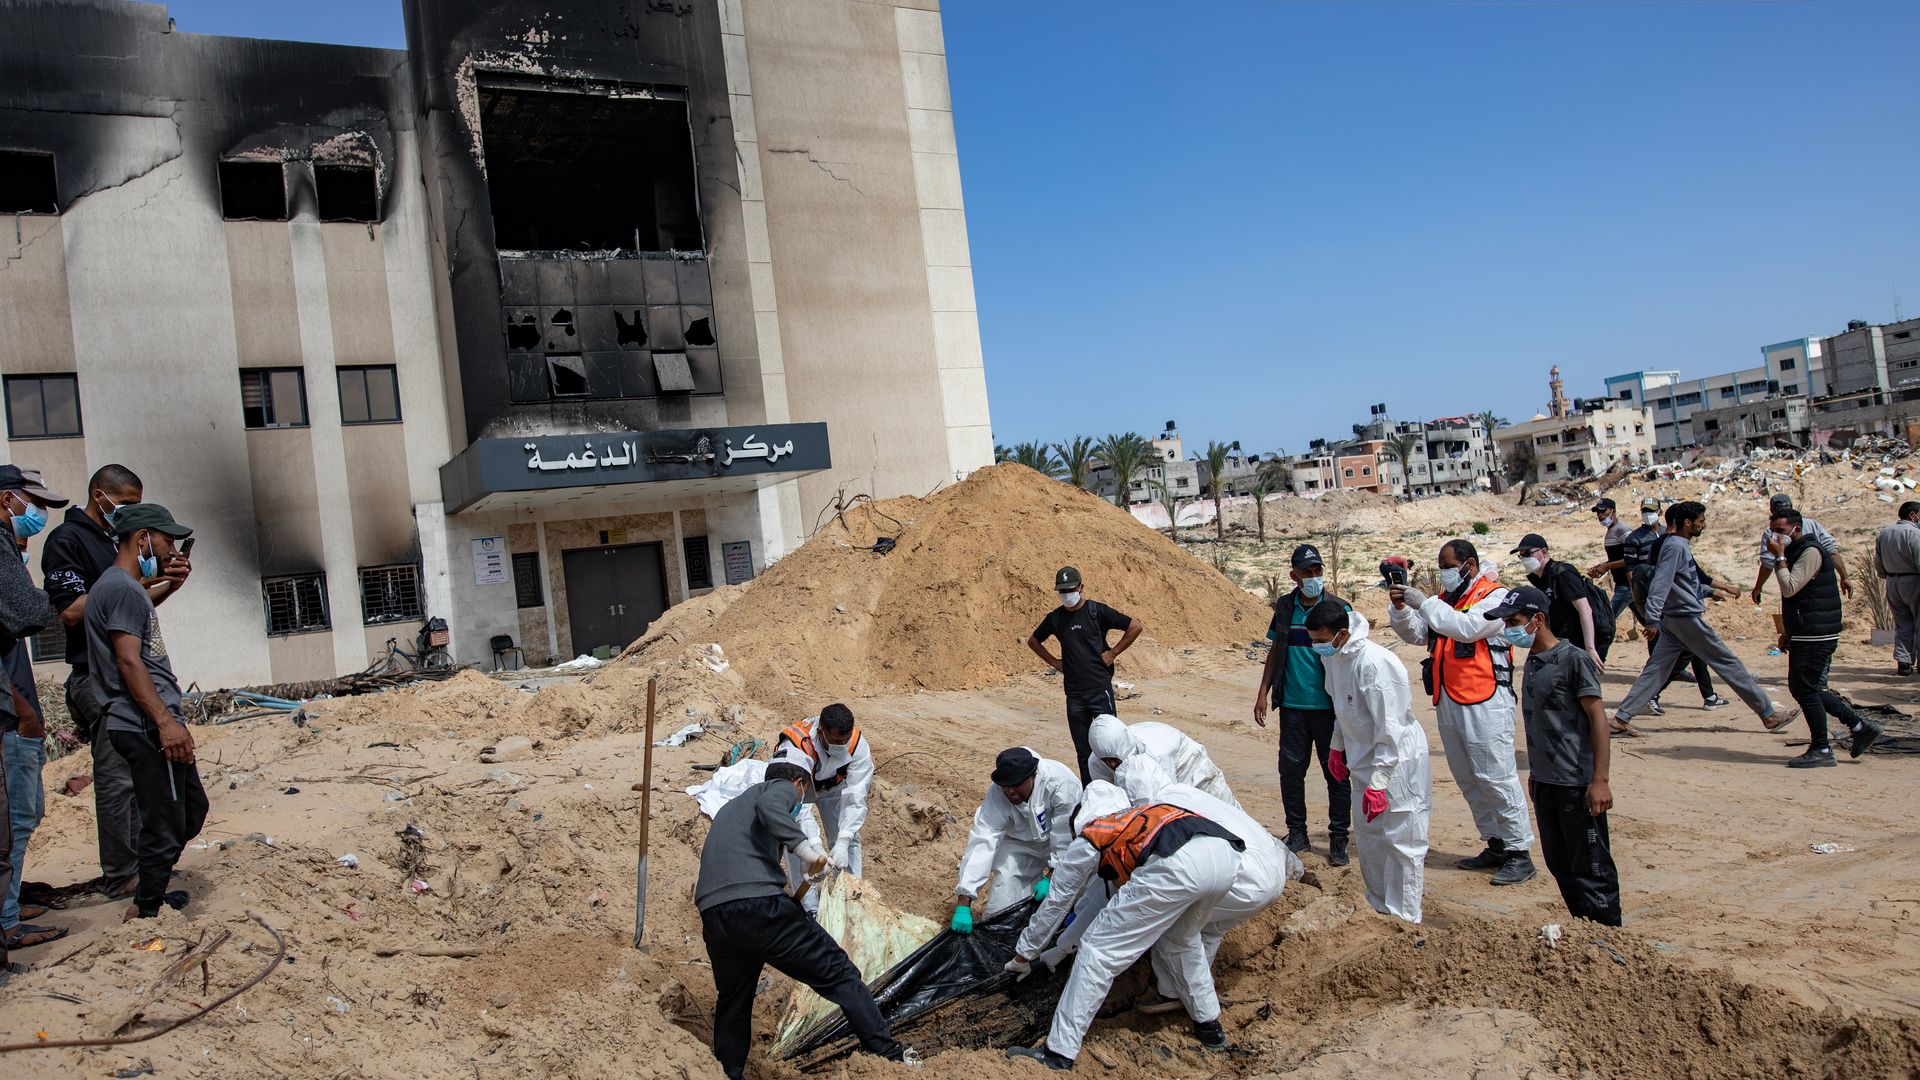 gazastreifen: berichte über massengräber – uno fordert internationale untersuchung